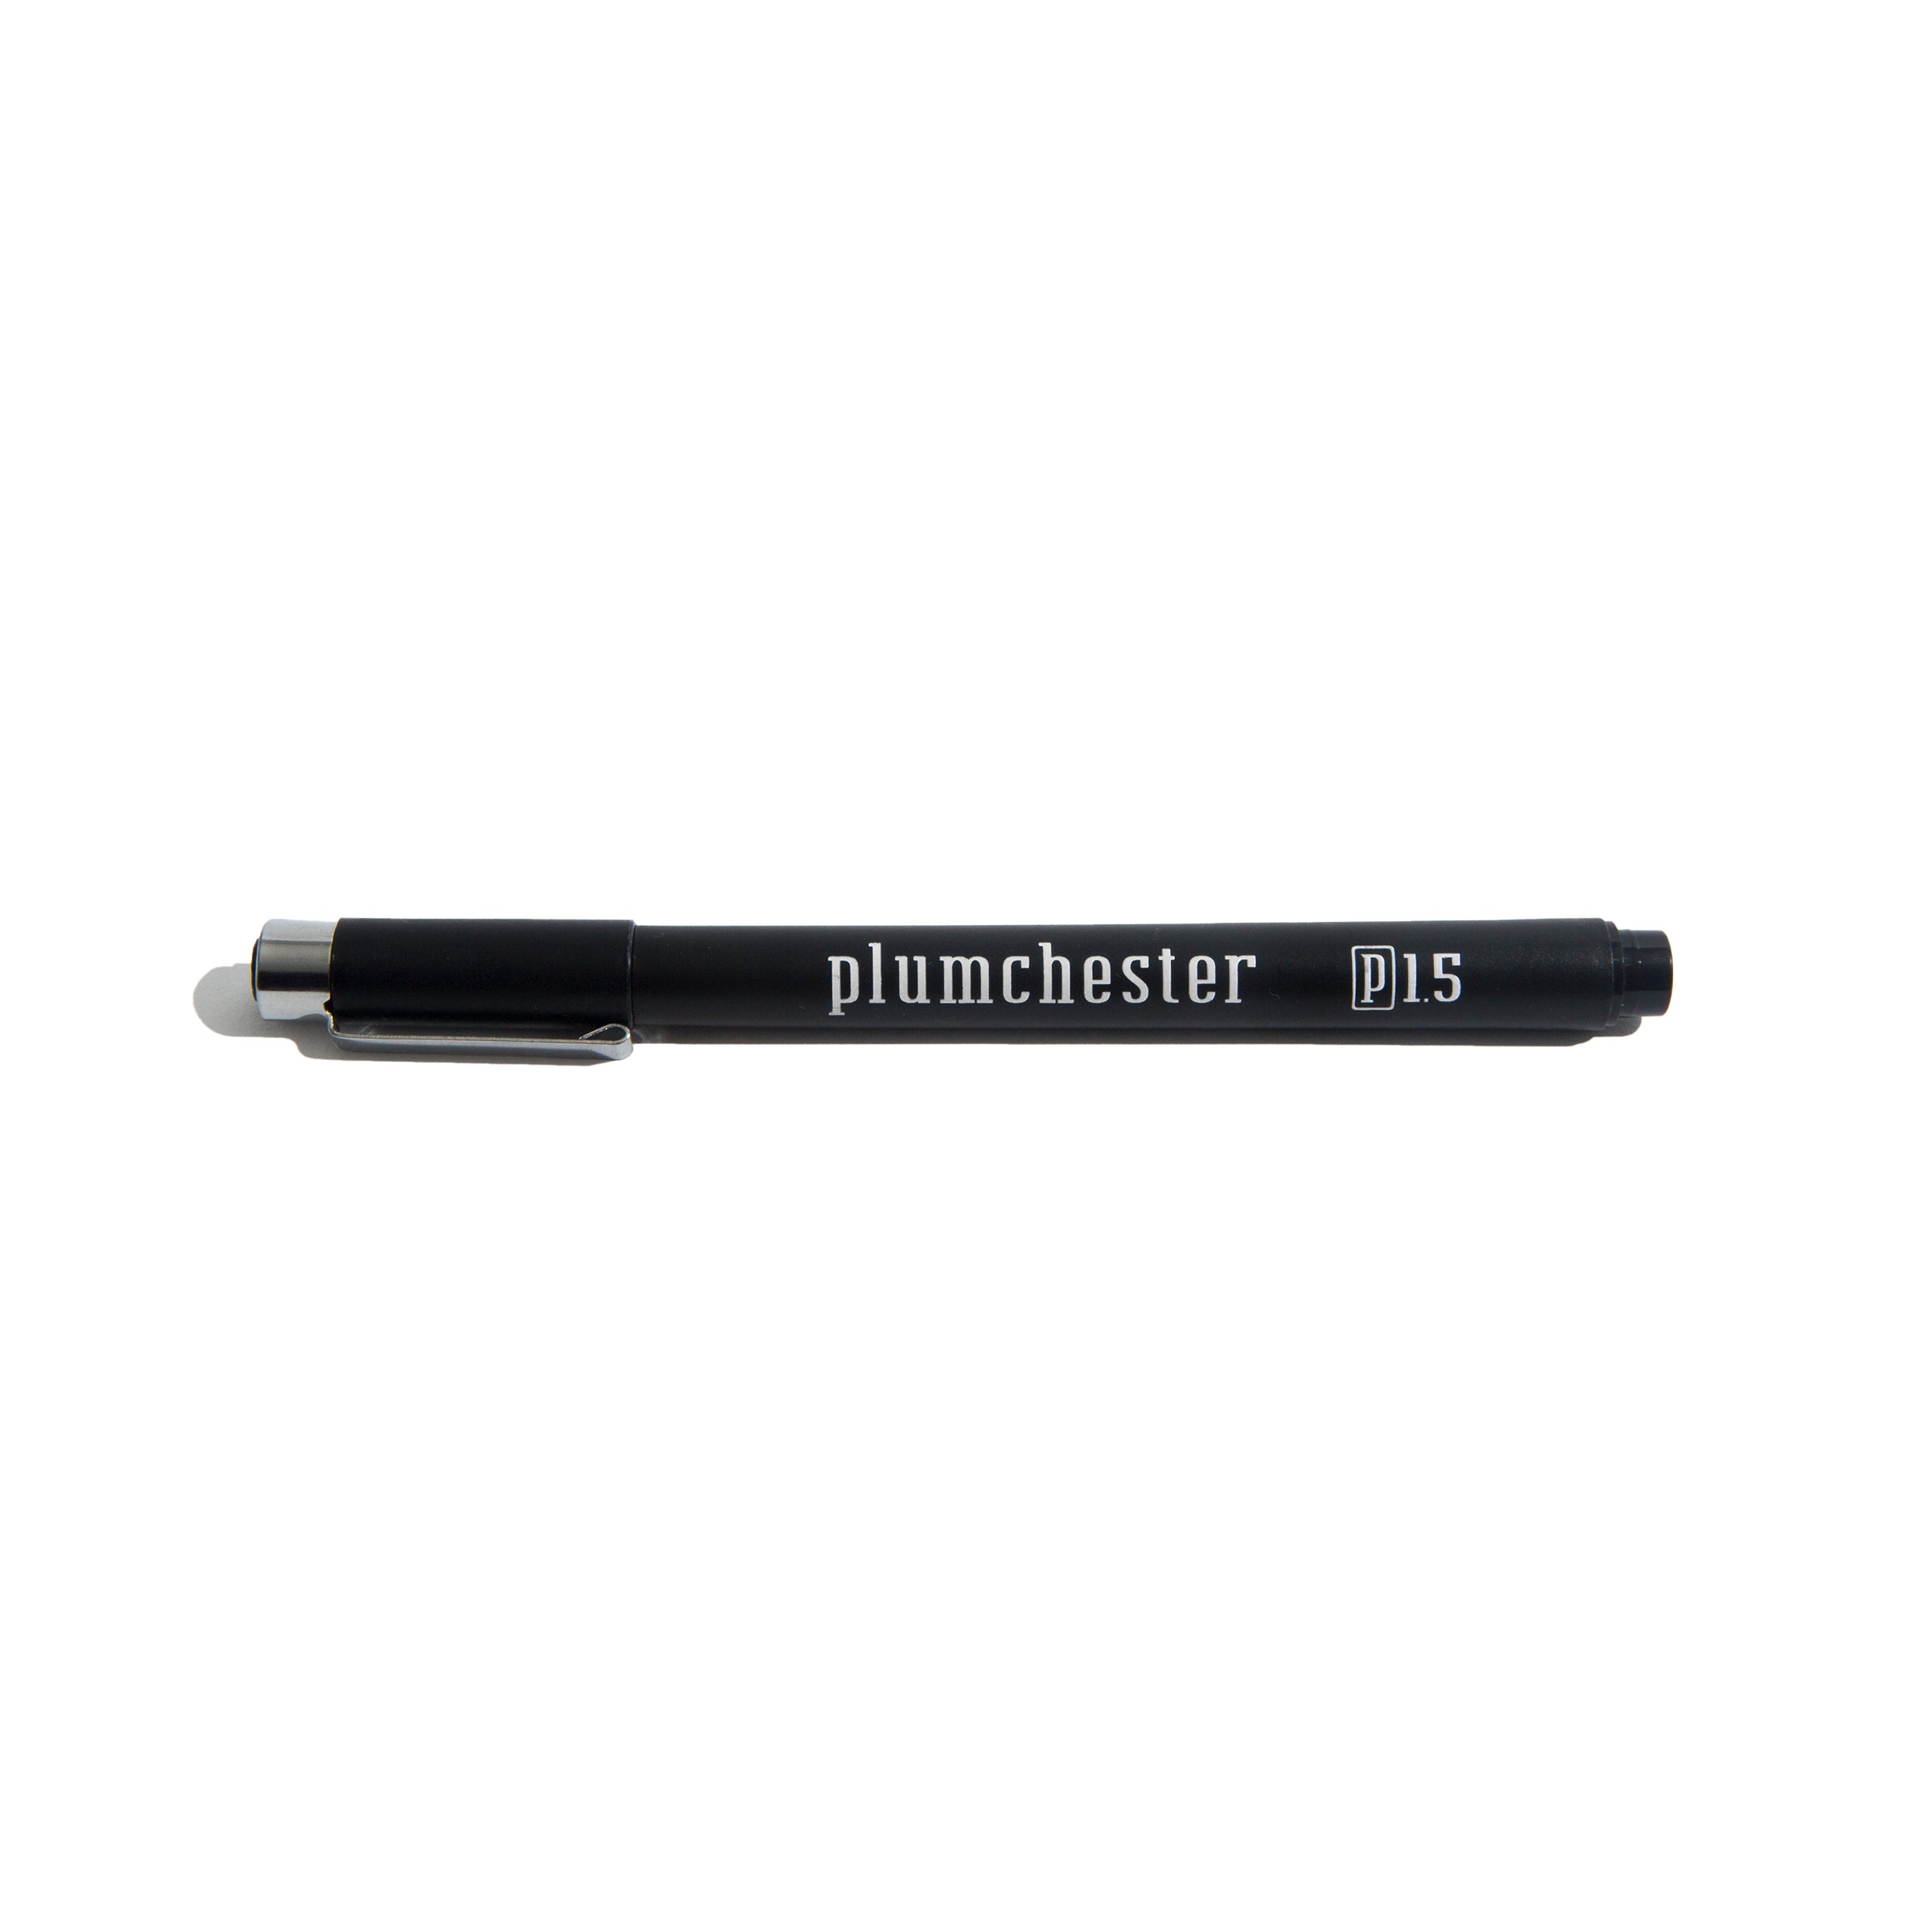 Plumchester 1.5 Fine Brush Pen